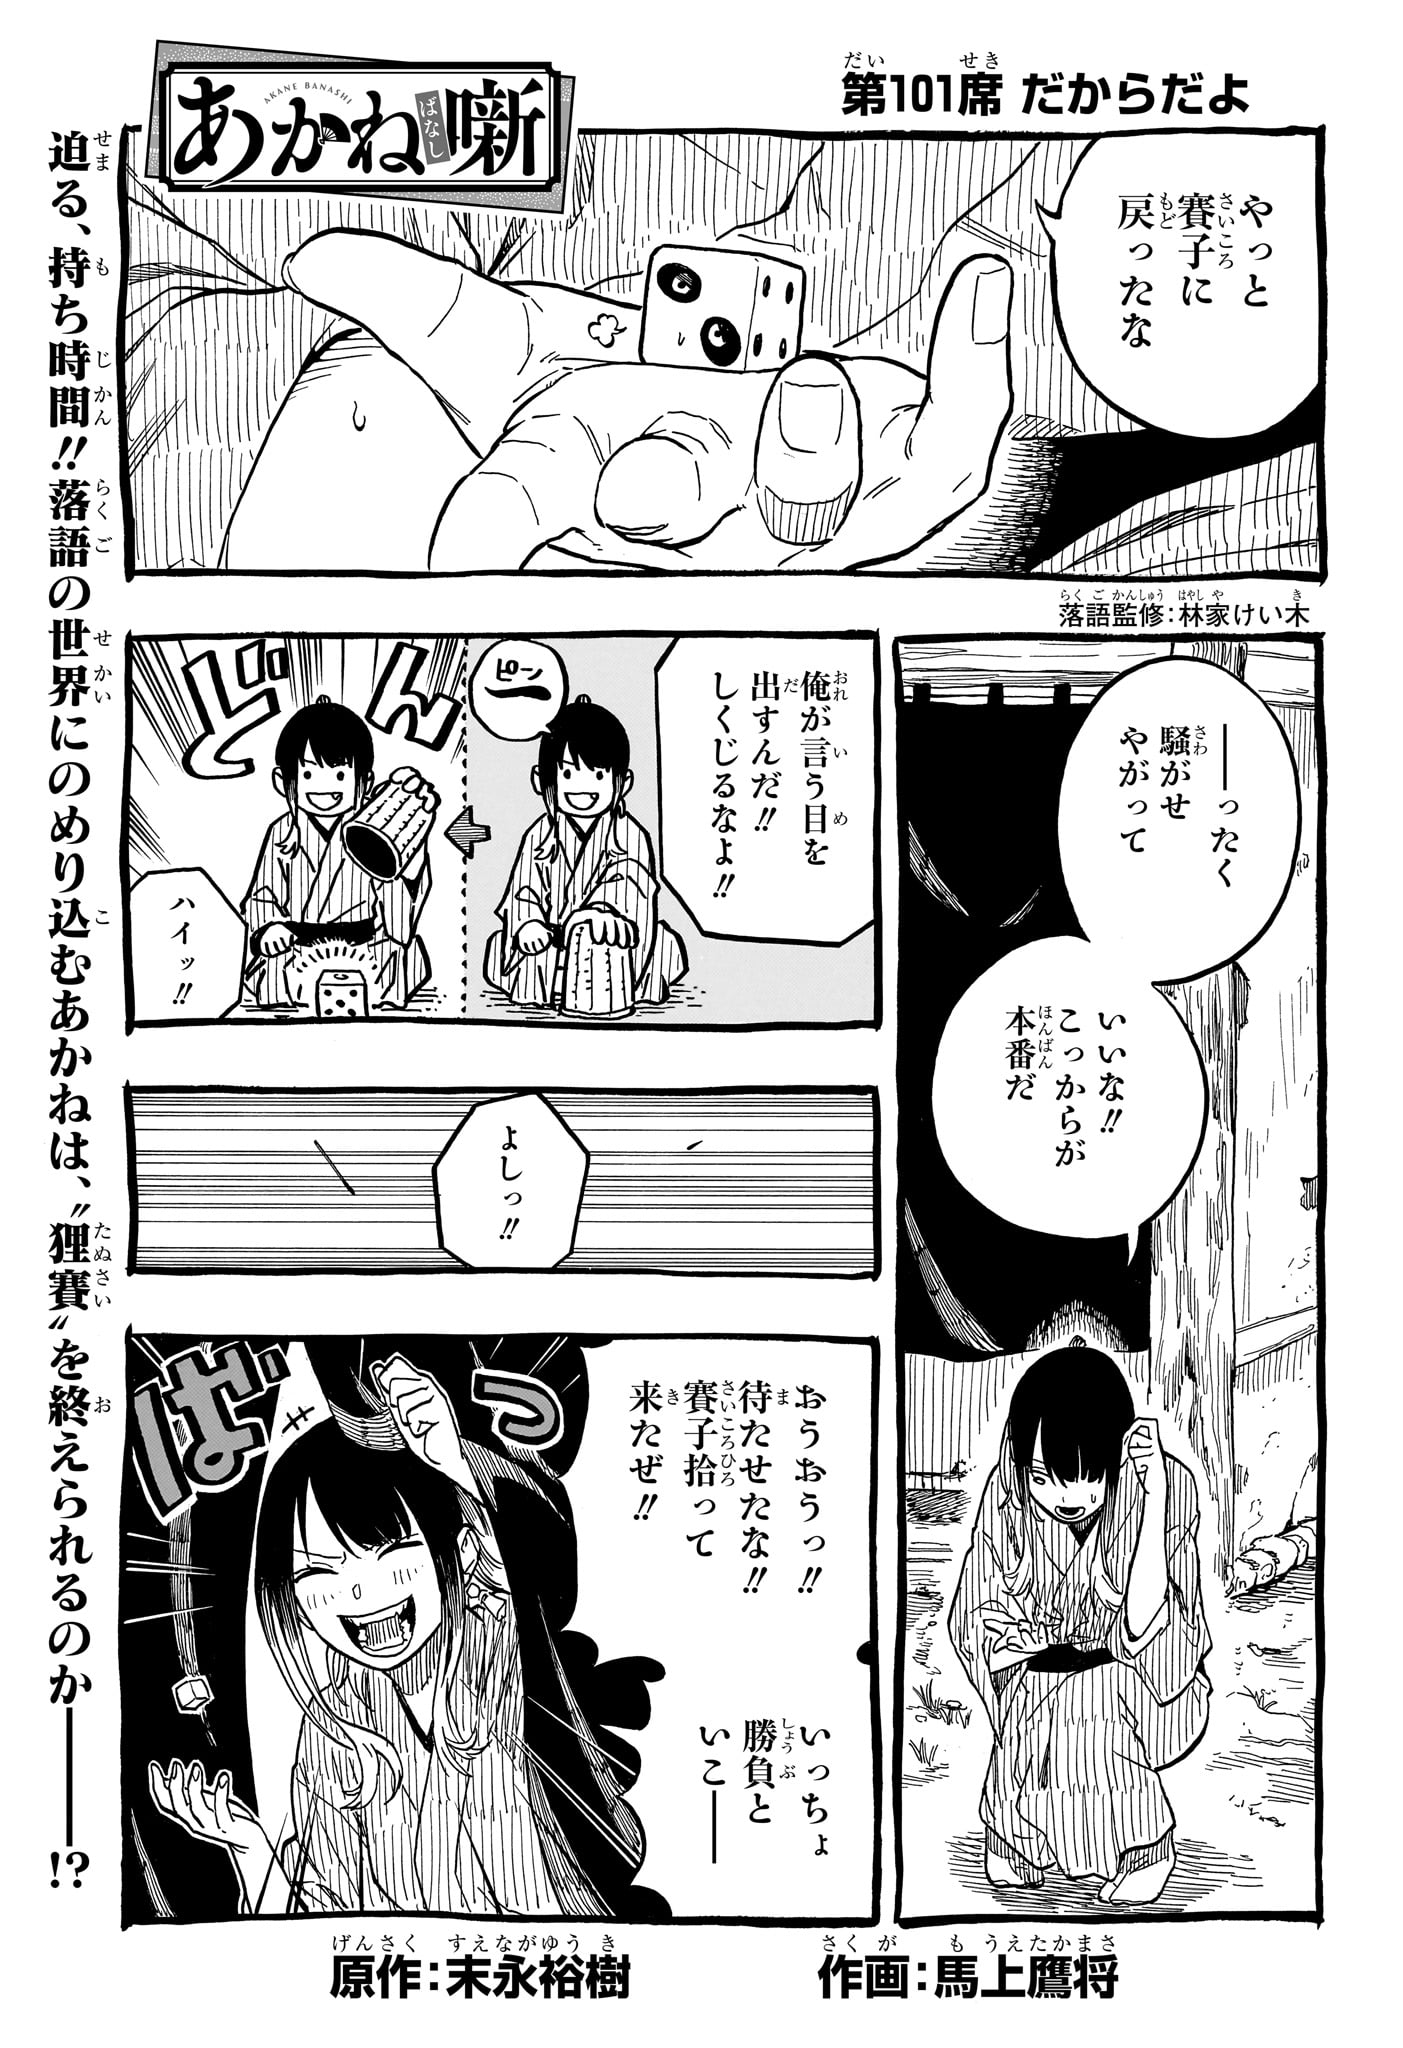 Akane-Banashi - Chapter 101 - Page 1